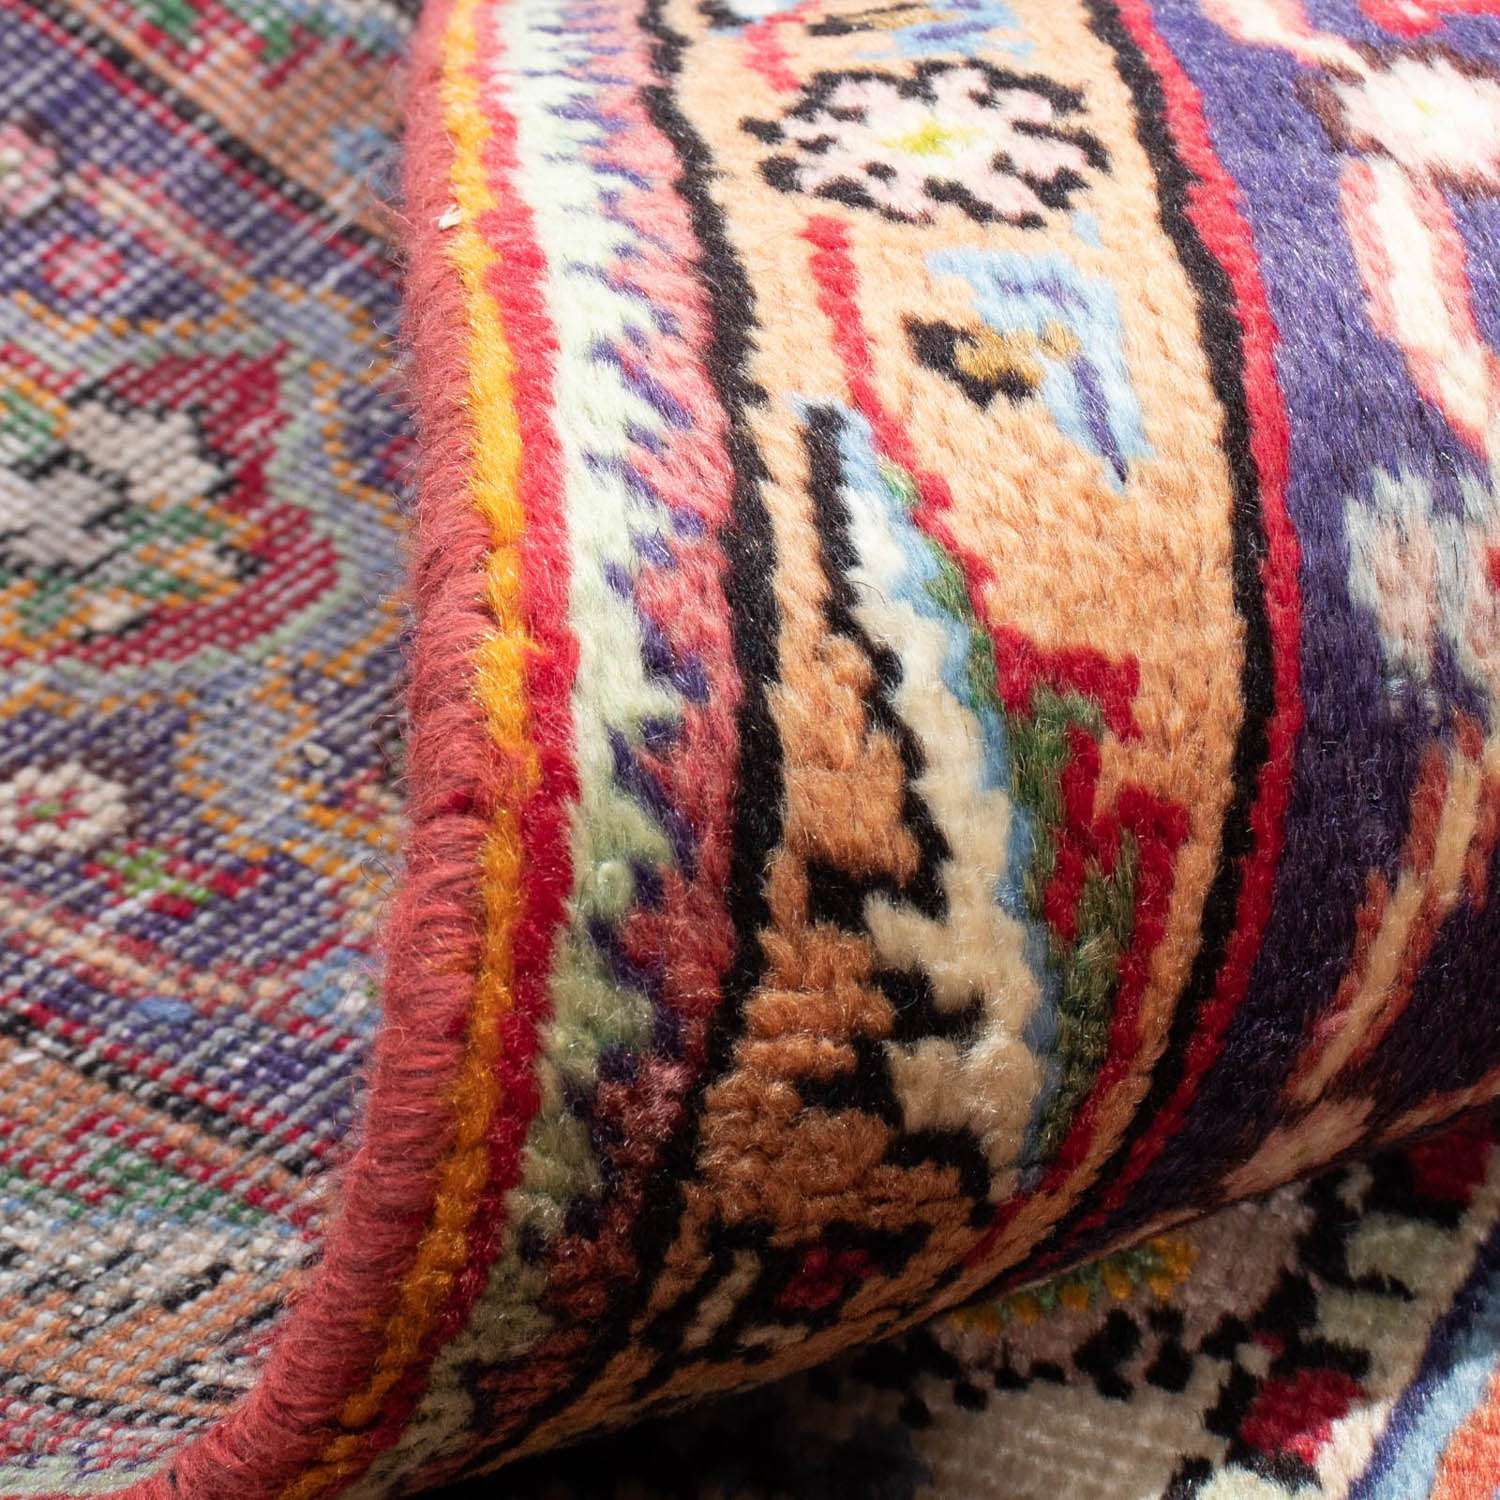 Persisk tæppe - Tabriz - 290 x 193 cm - rød